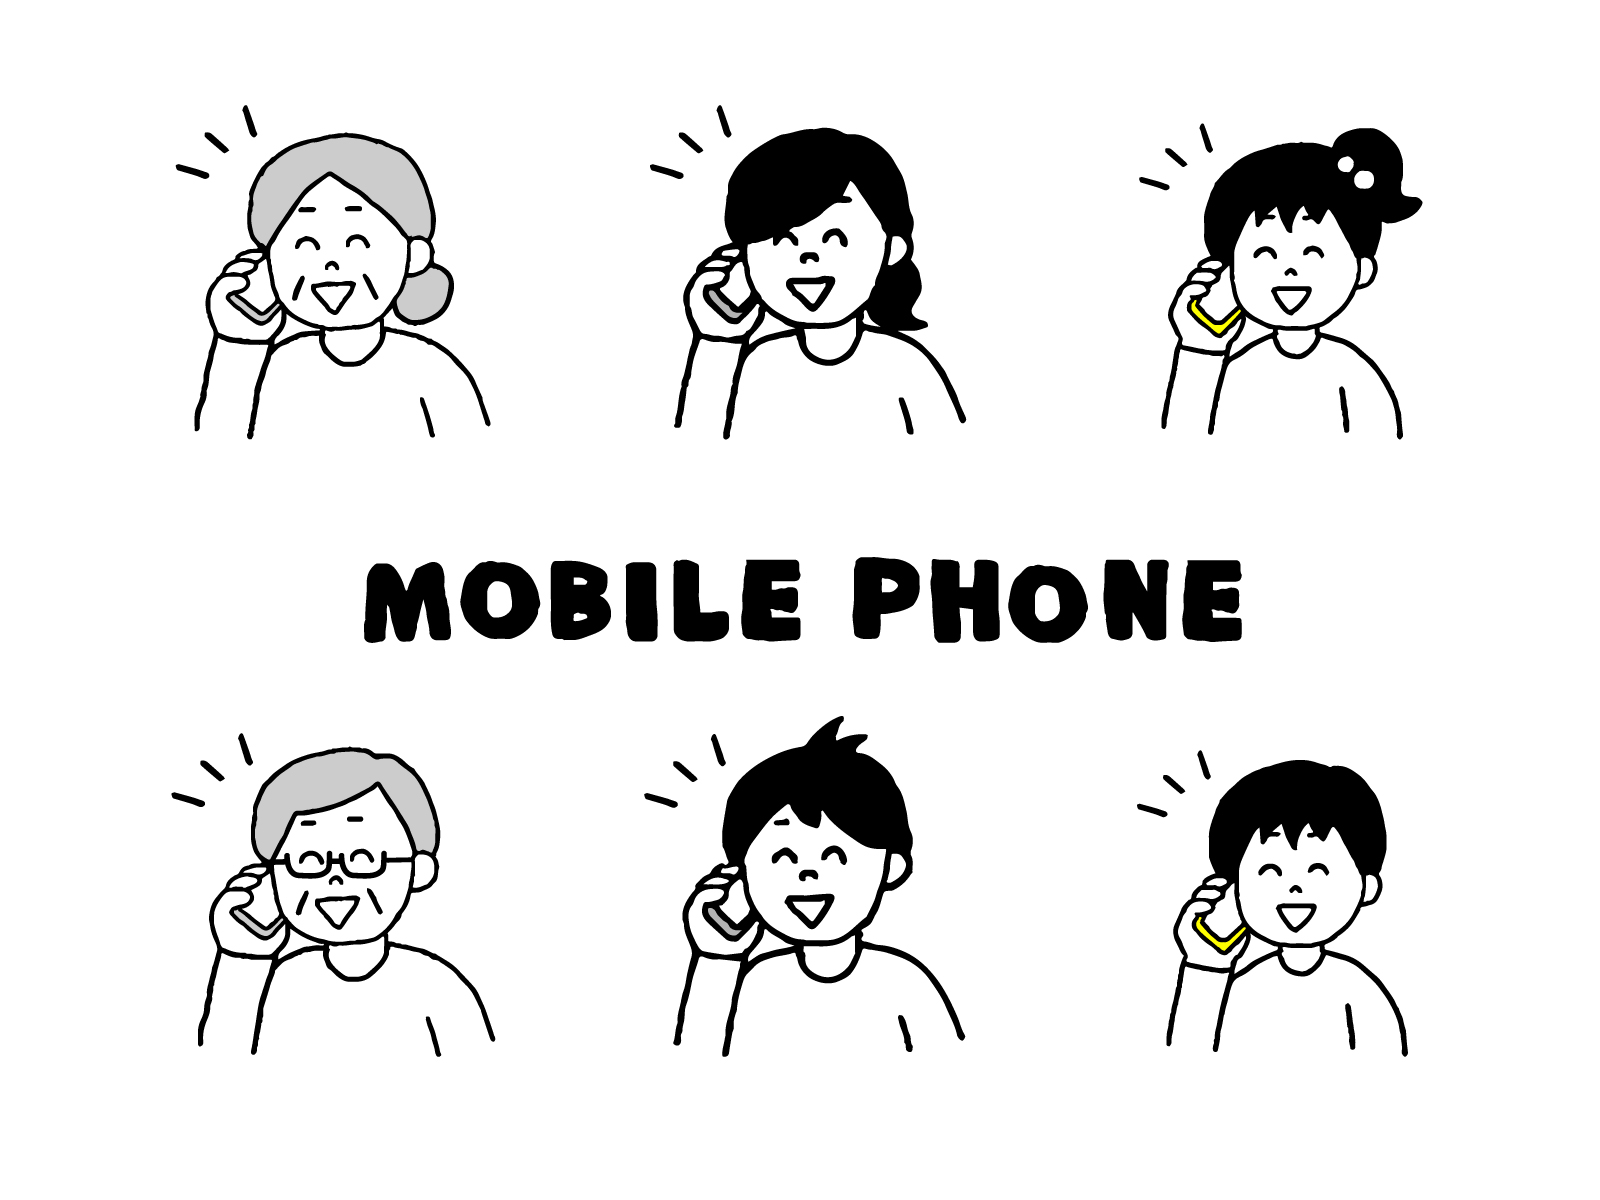 電話中の人のイラストとモバイルフォンの文字画像